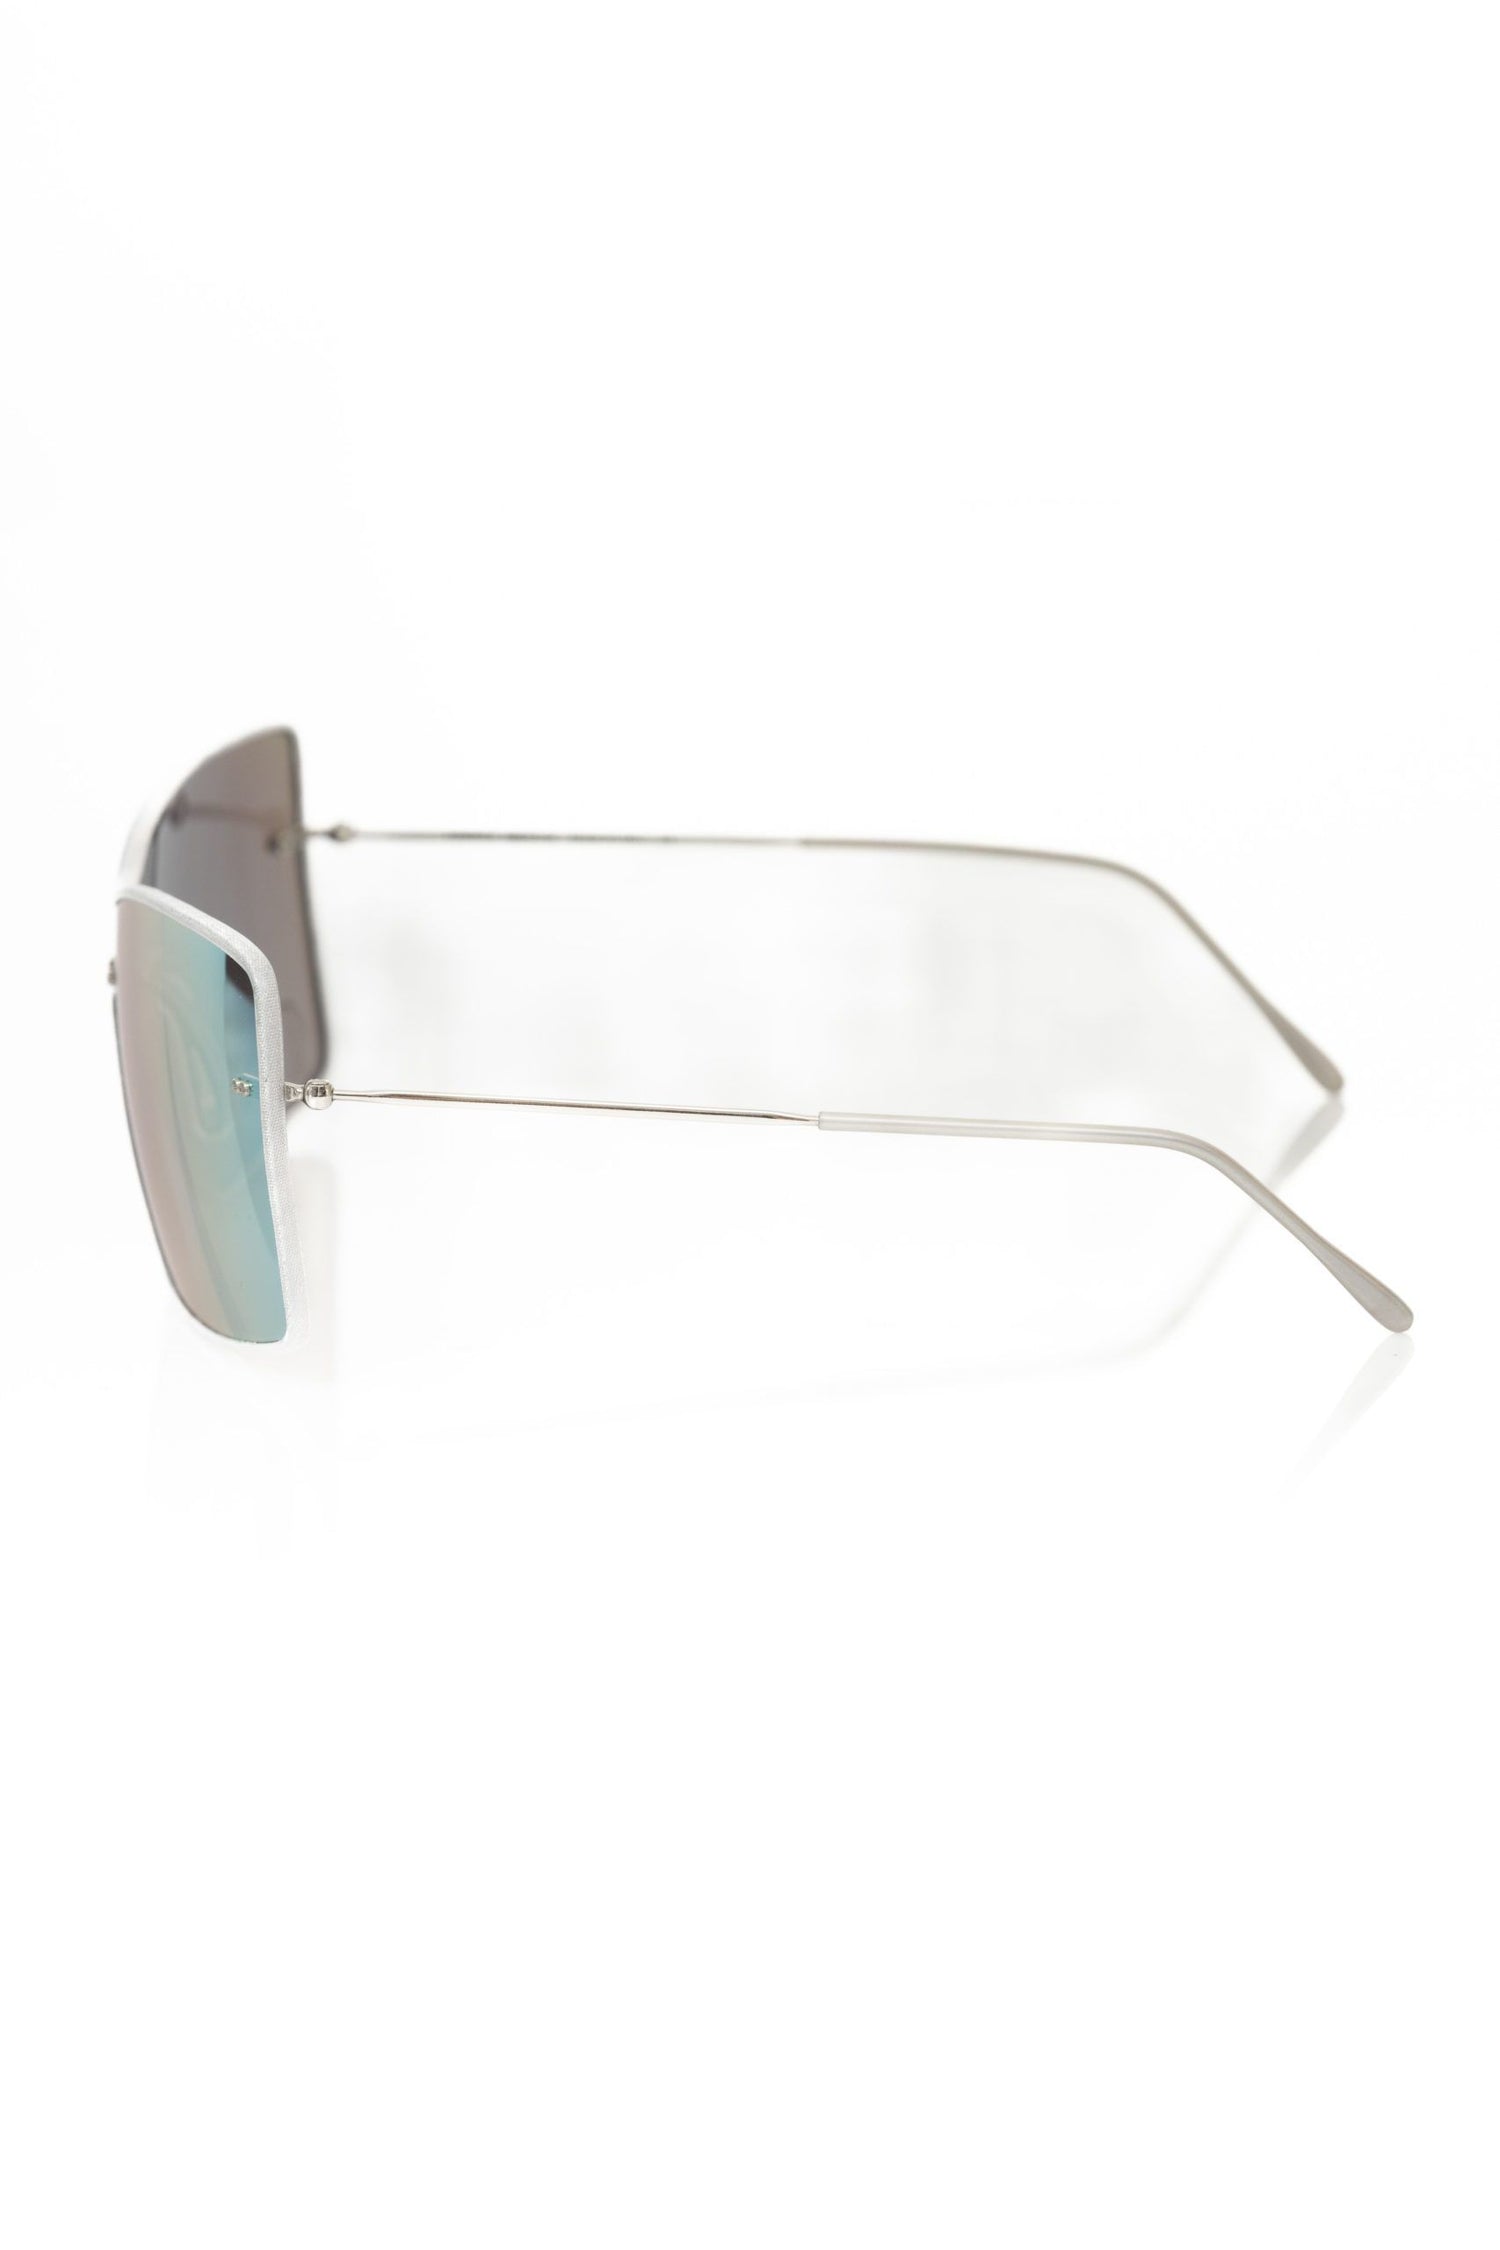 Frankie Morello Silver Metallic Fibre Sunglasses - DEA STILOSA MILANO